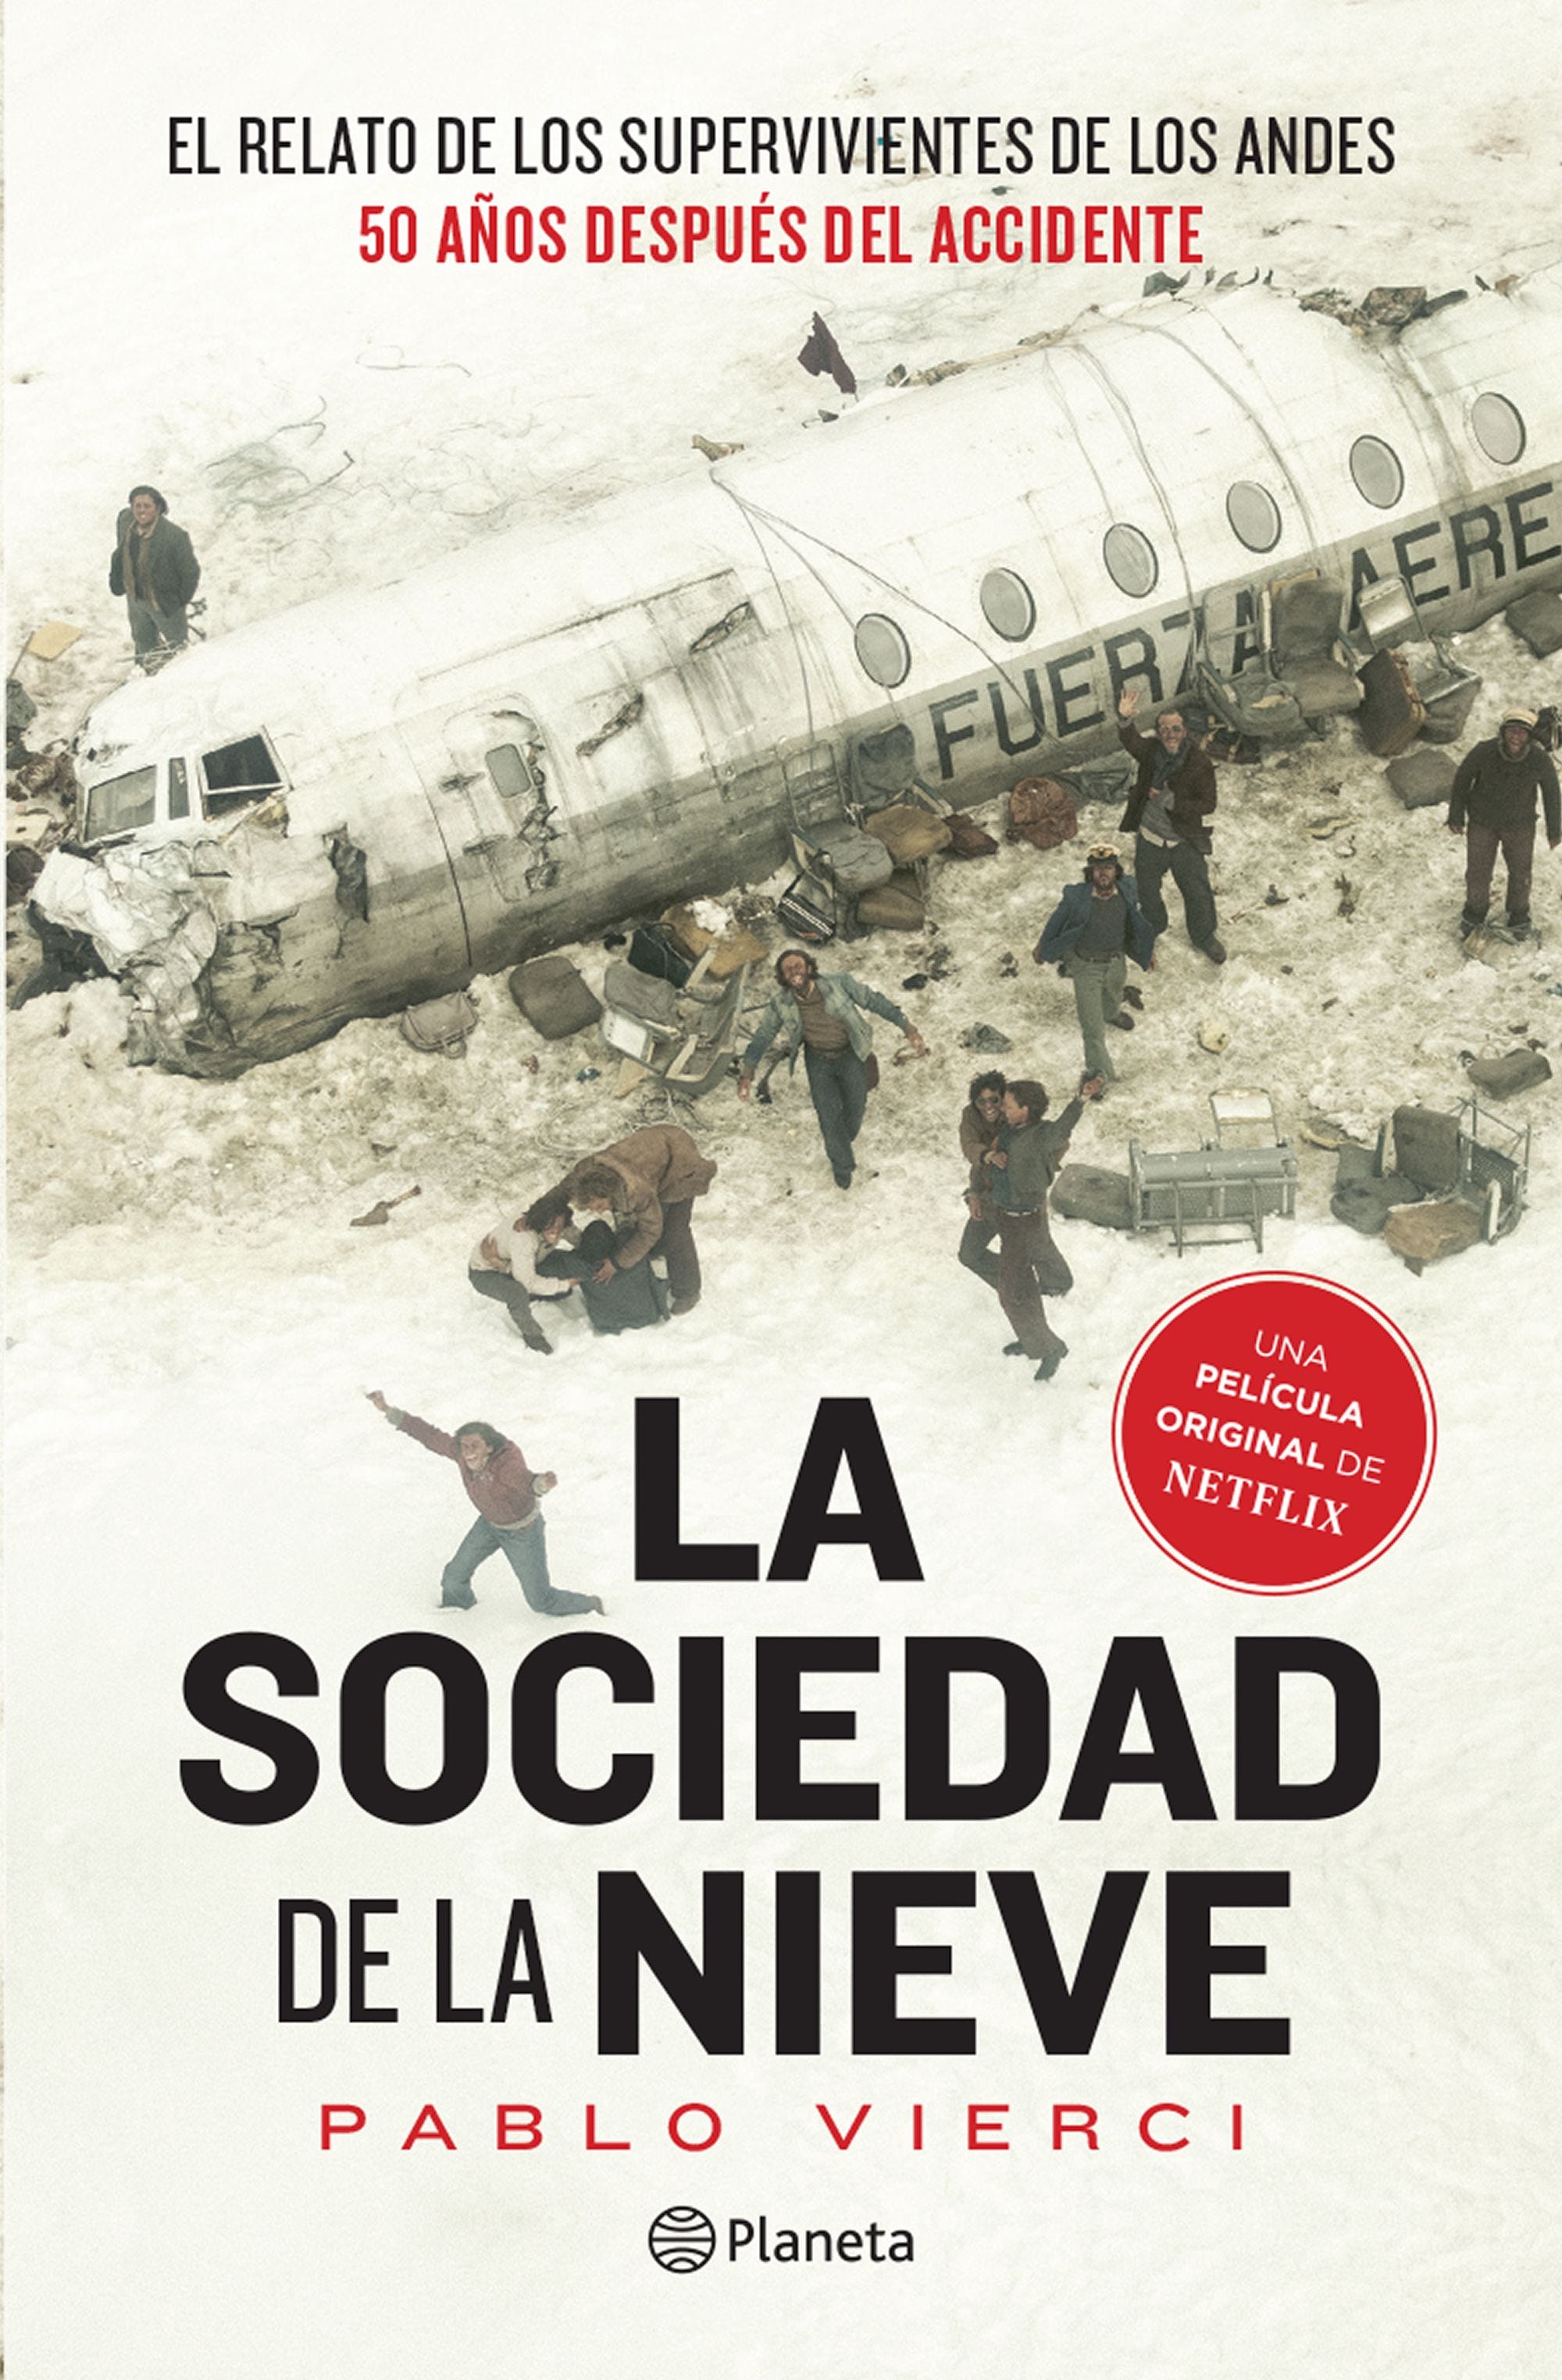 Libros basados en la tragedia de los Andes - Libros Urgentes. Sólo libros